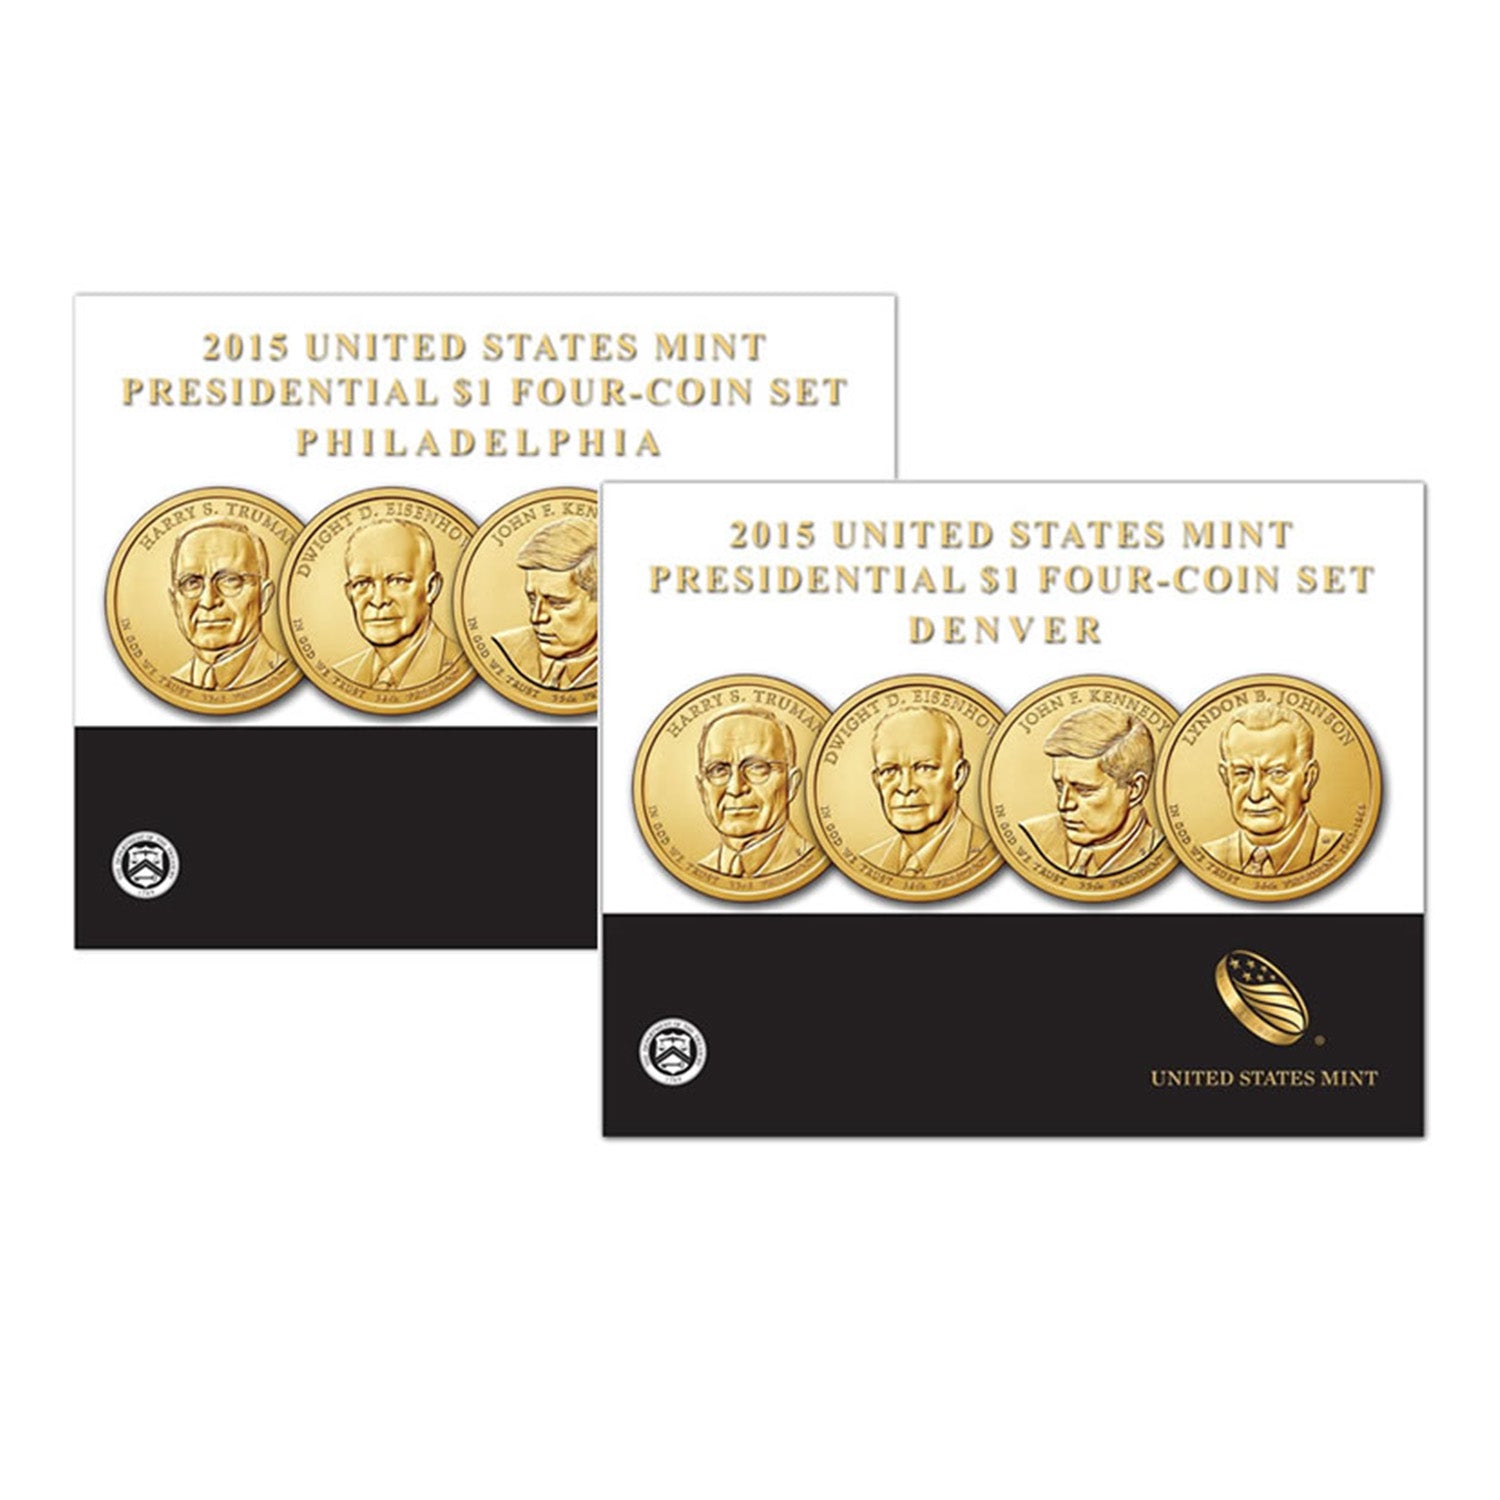 2015 United States Mint Presidential $1 Four-Coin Set Philadelphia & Denver